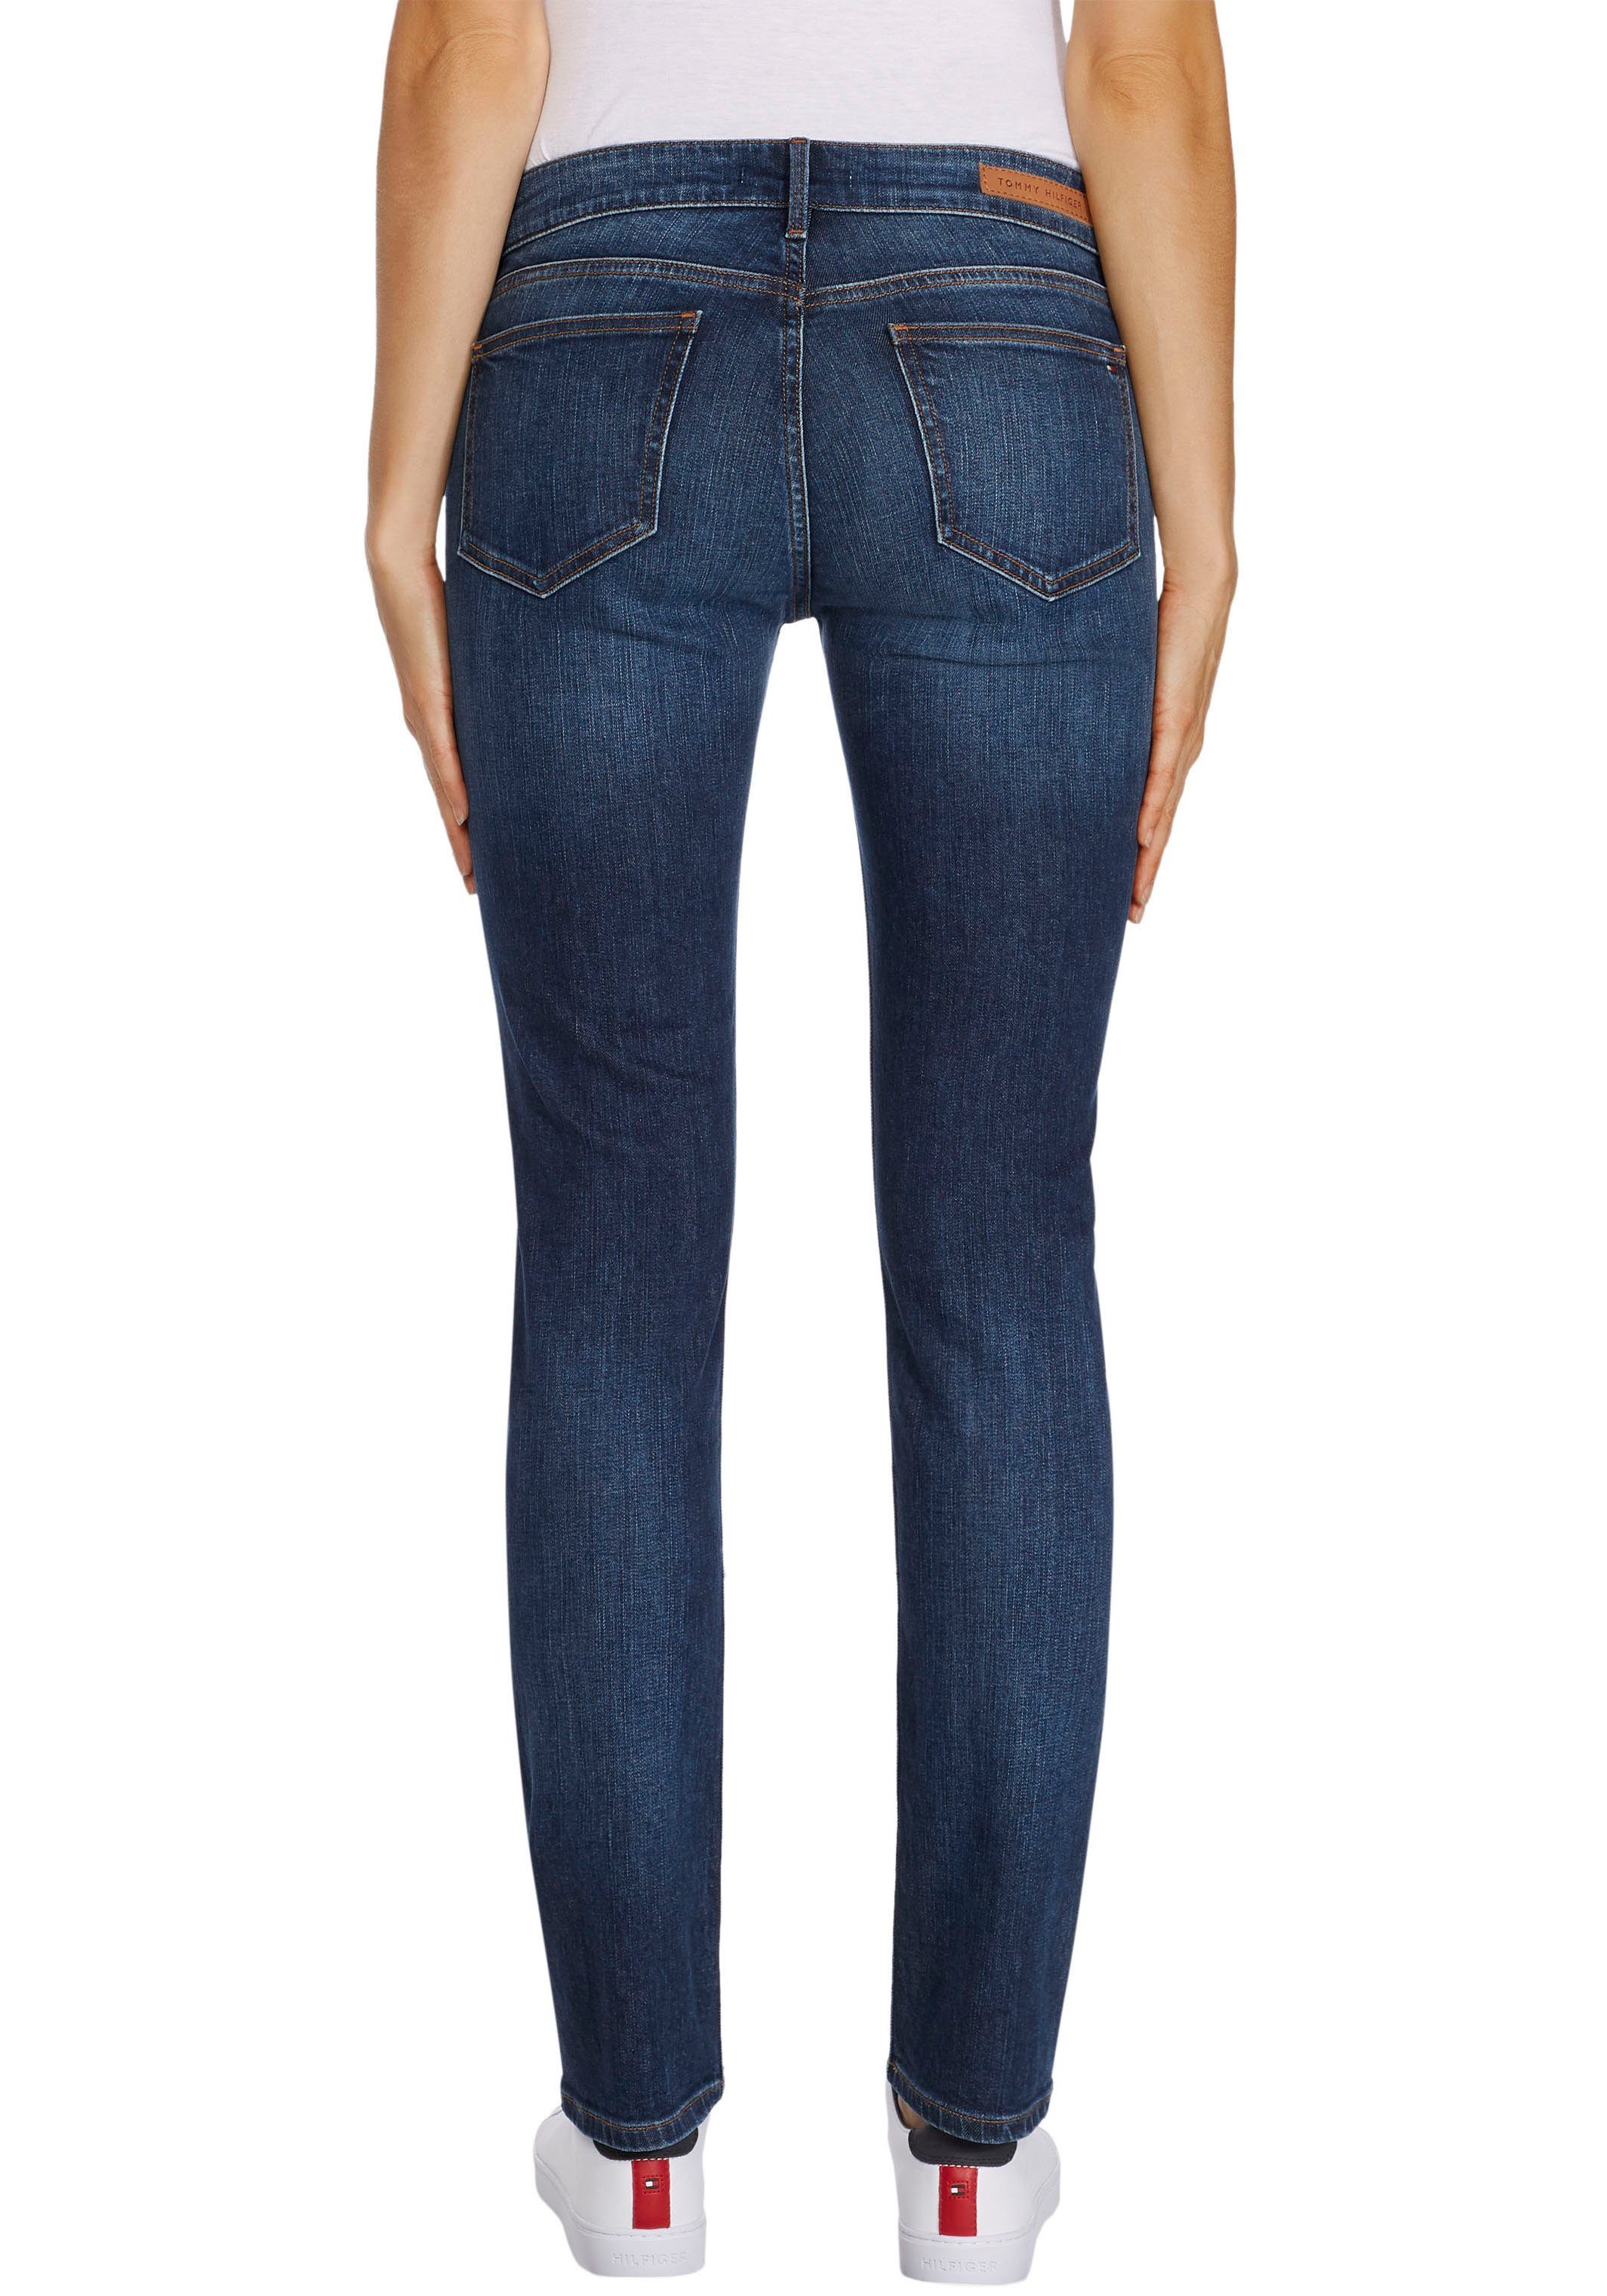 Damen Slim-Fit-Jeans online kaufen | OTTO